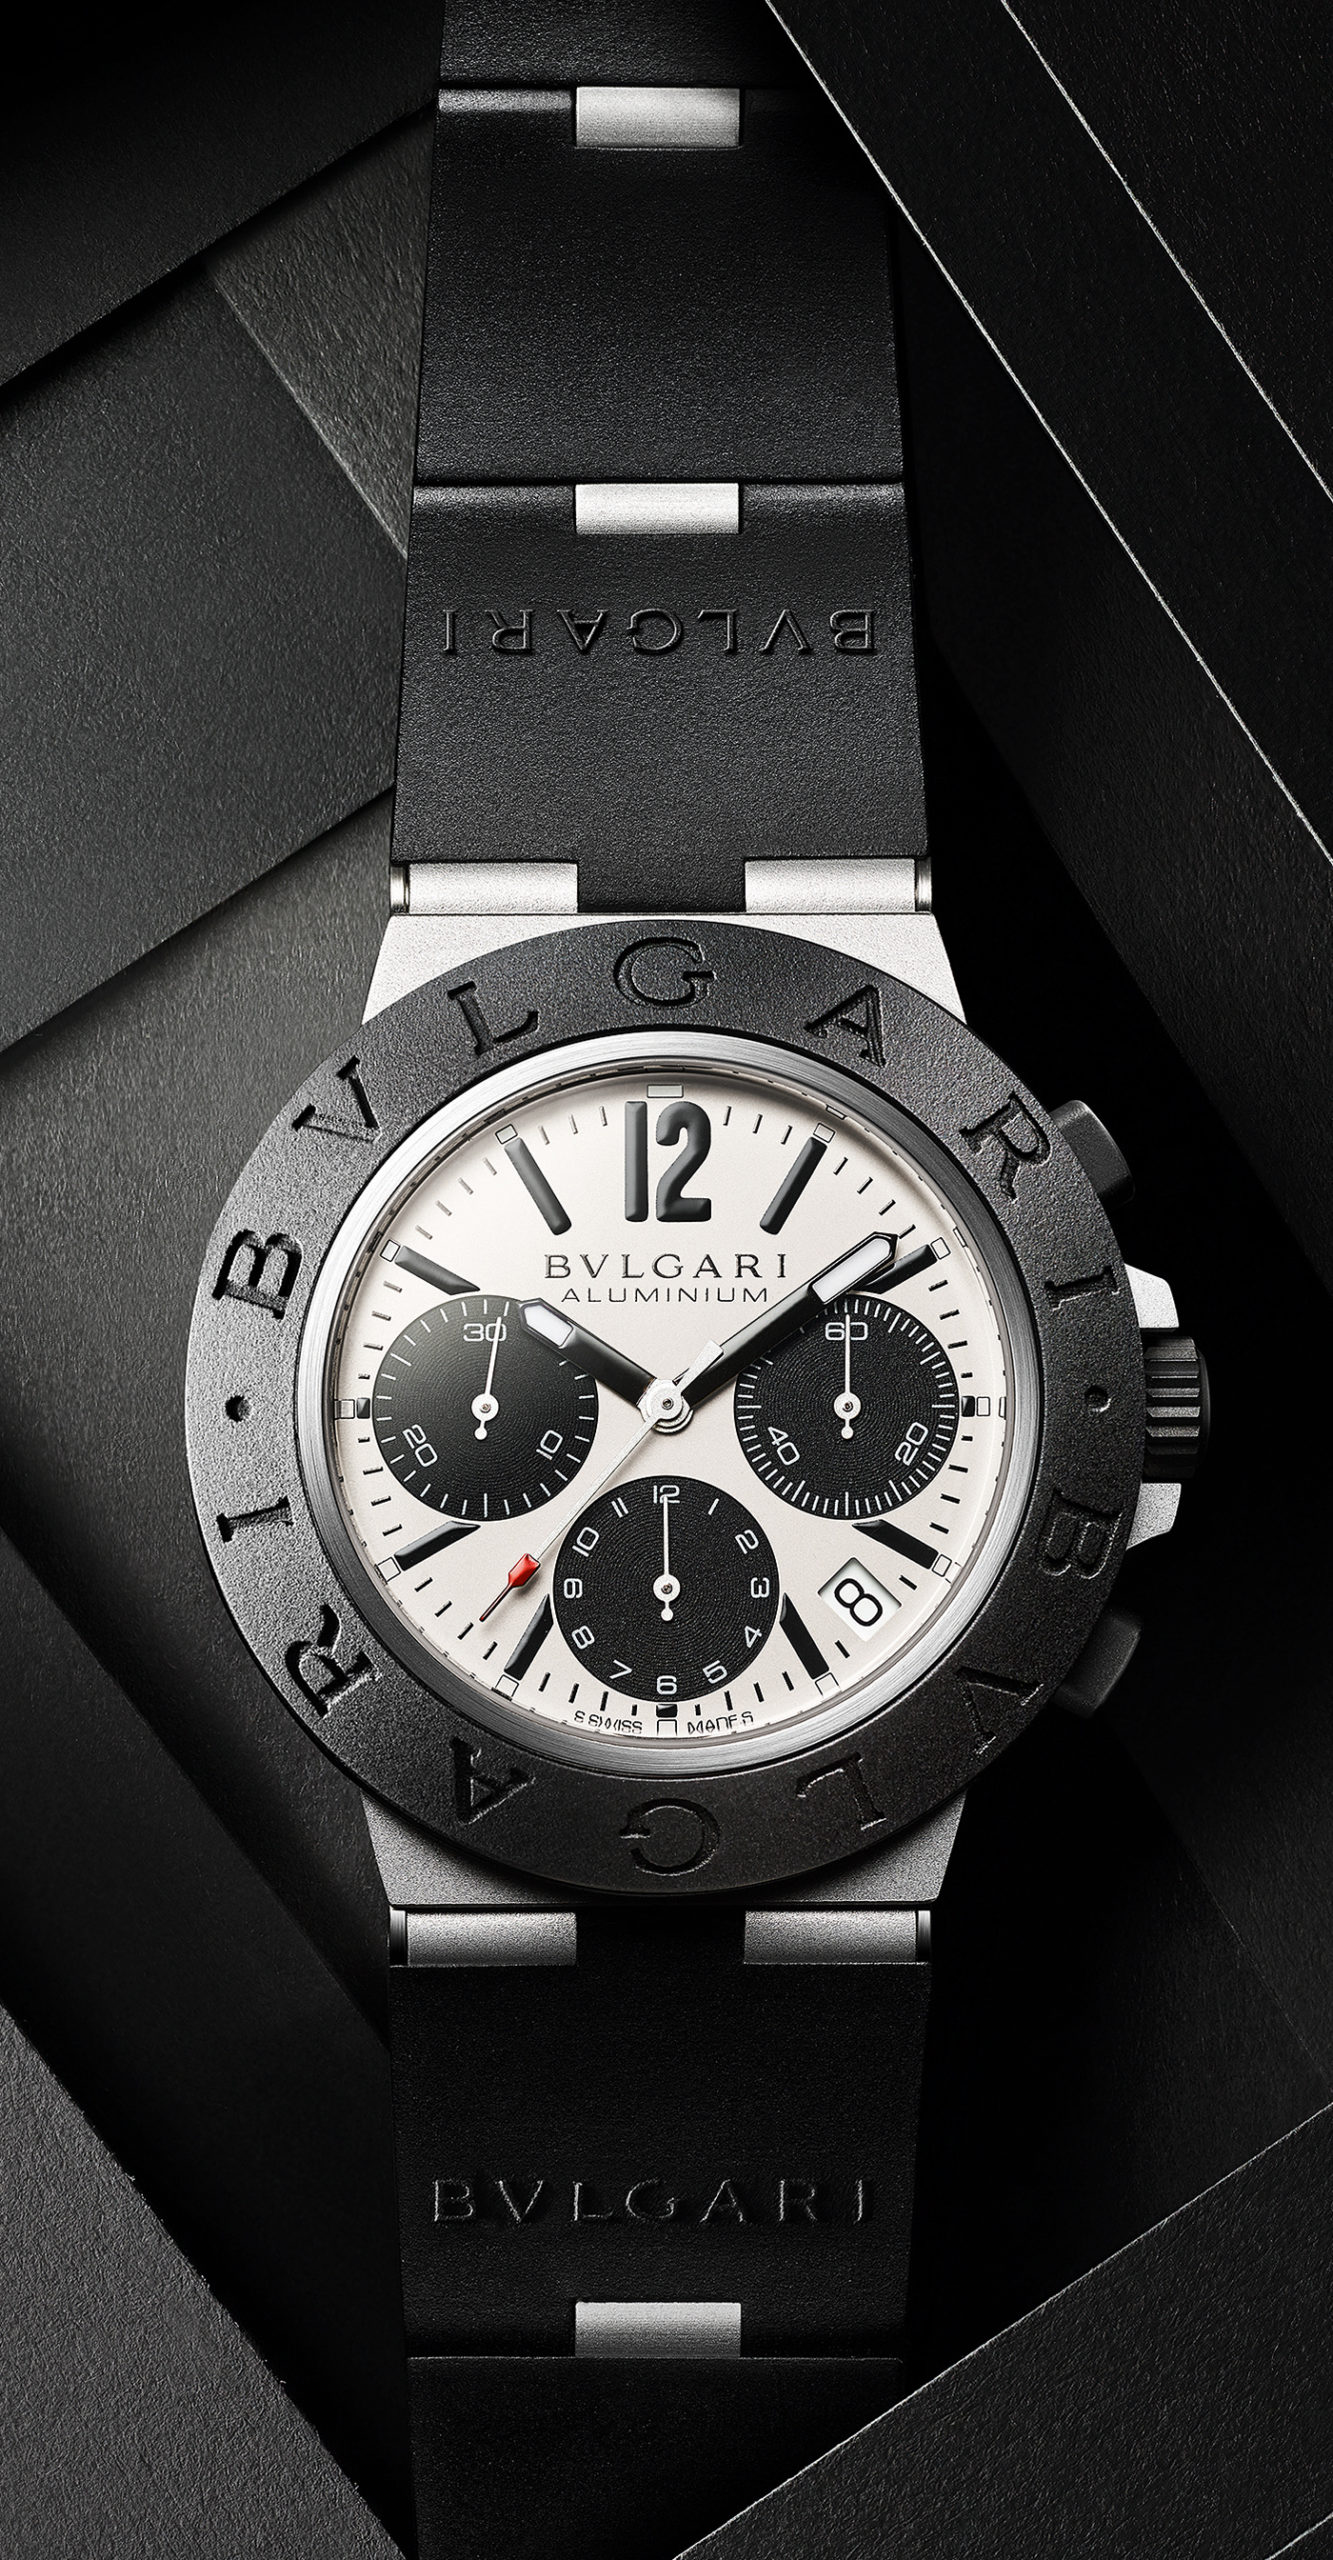 bvlgari watch aluminium price